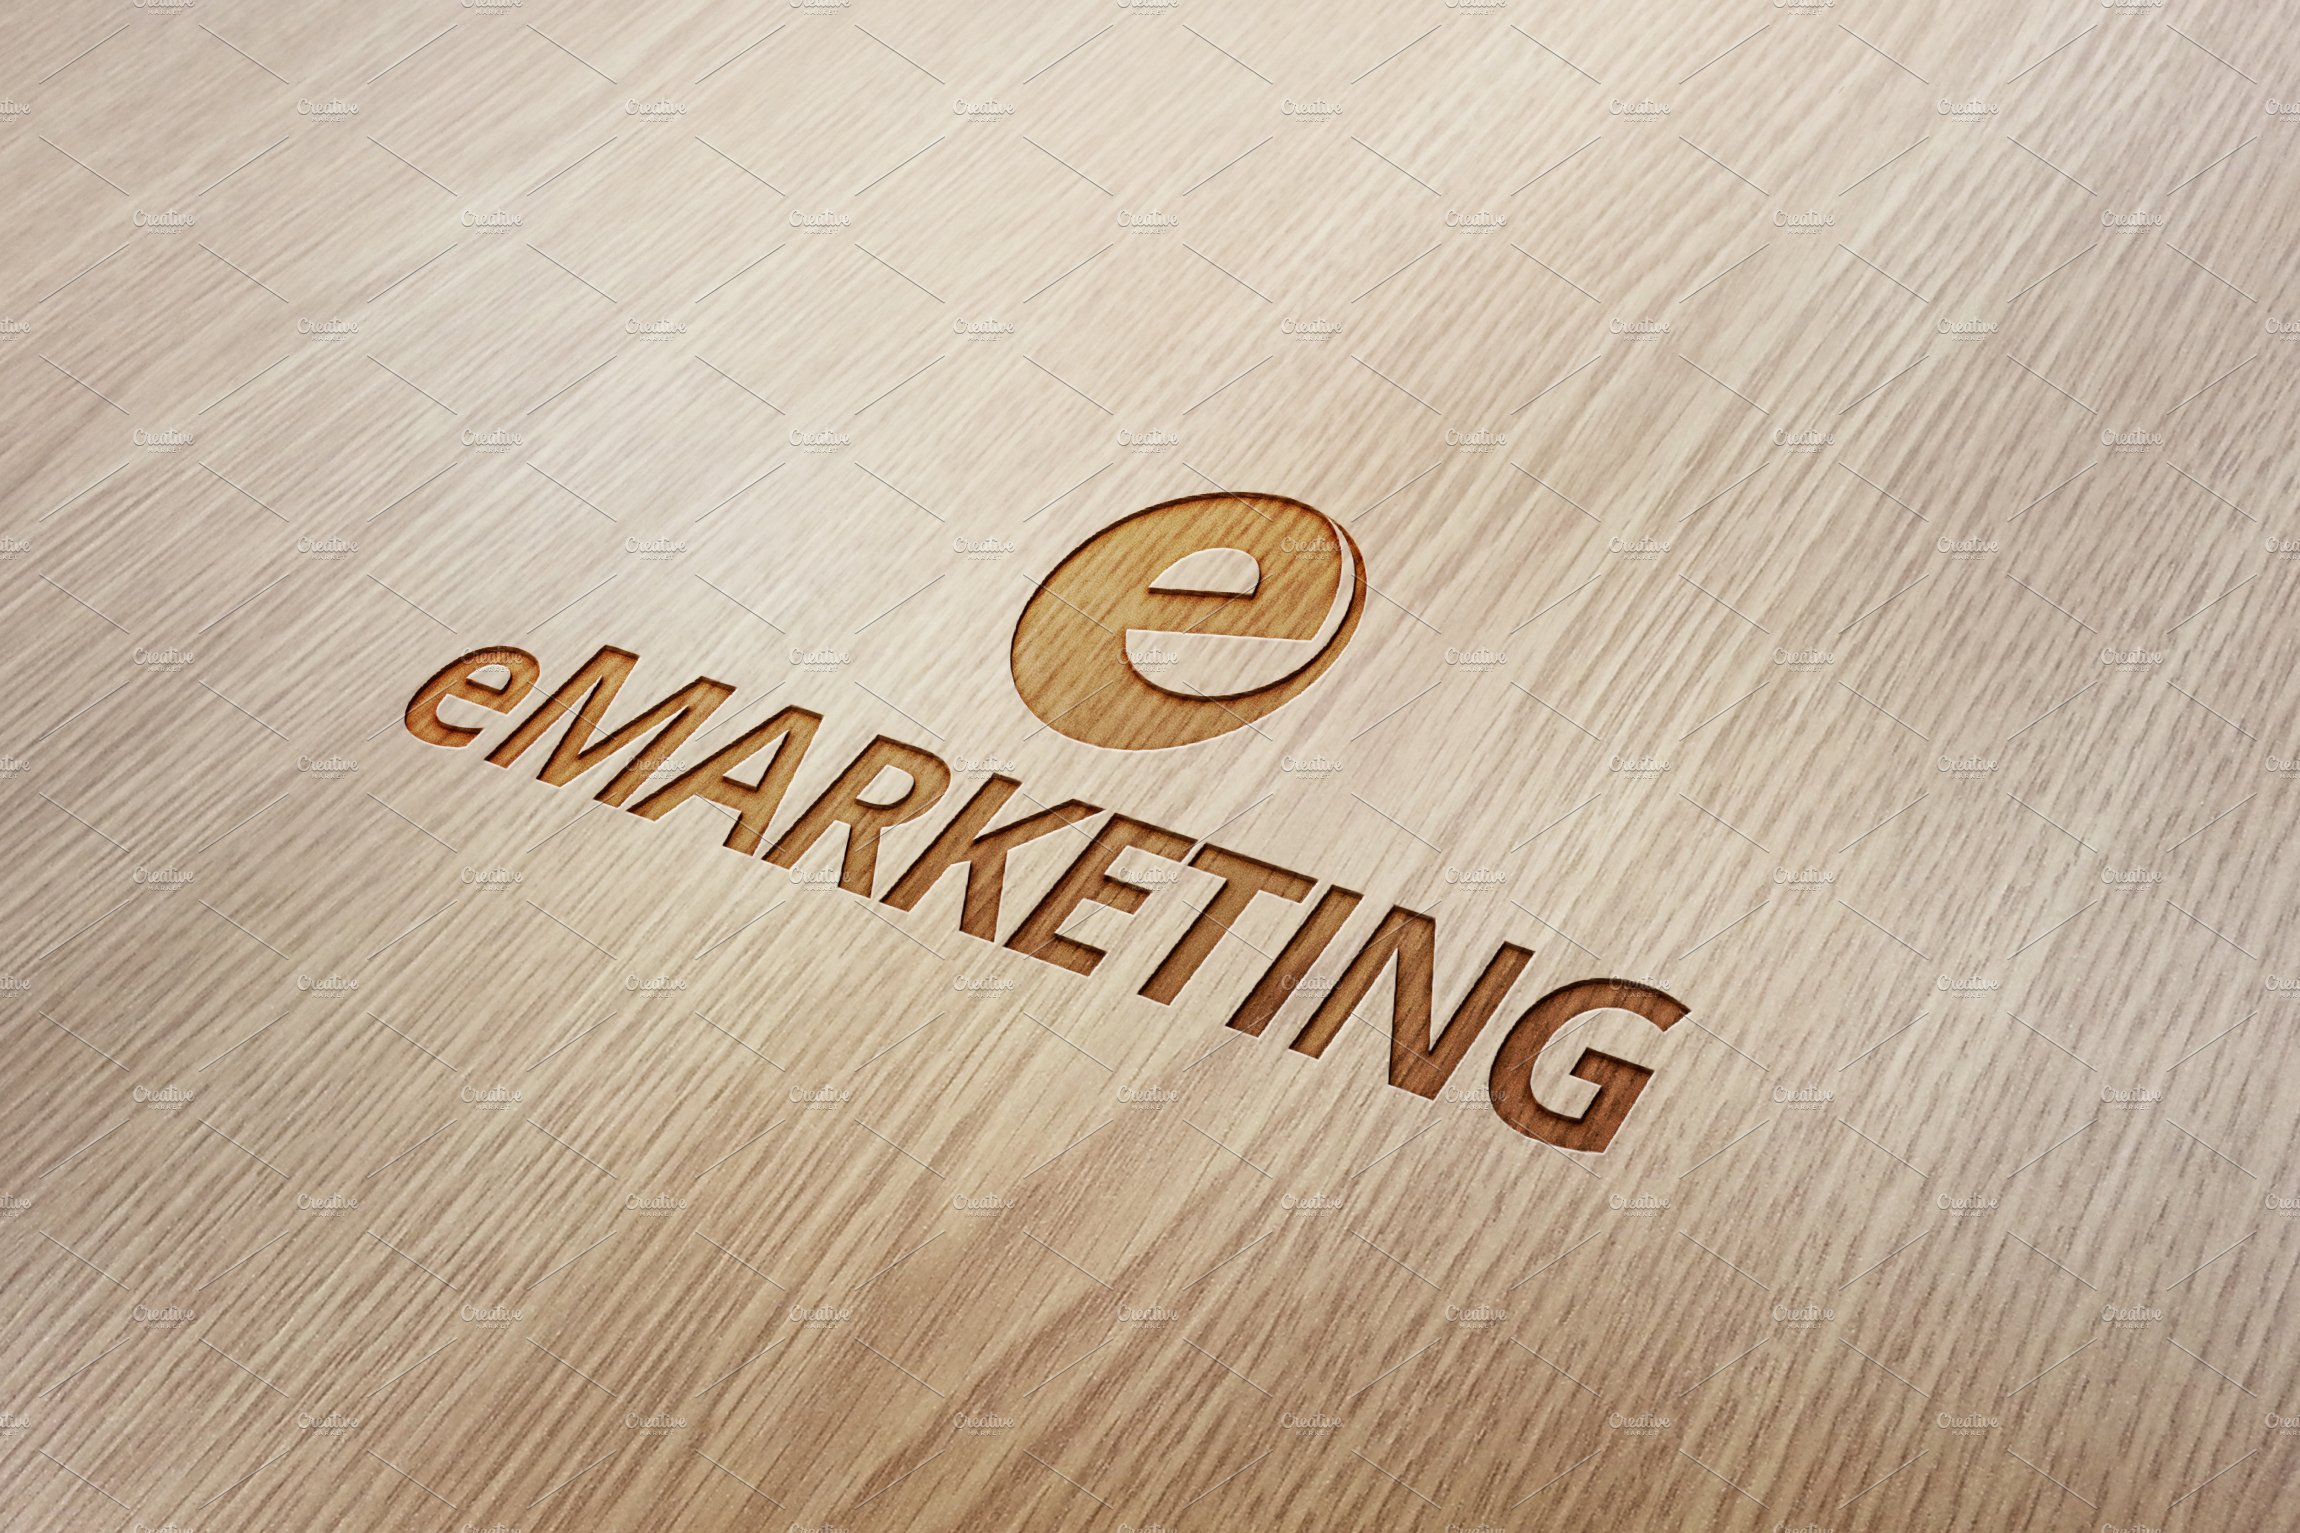 123 e marketing wood engraved logo mockup 876